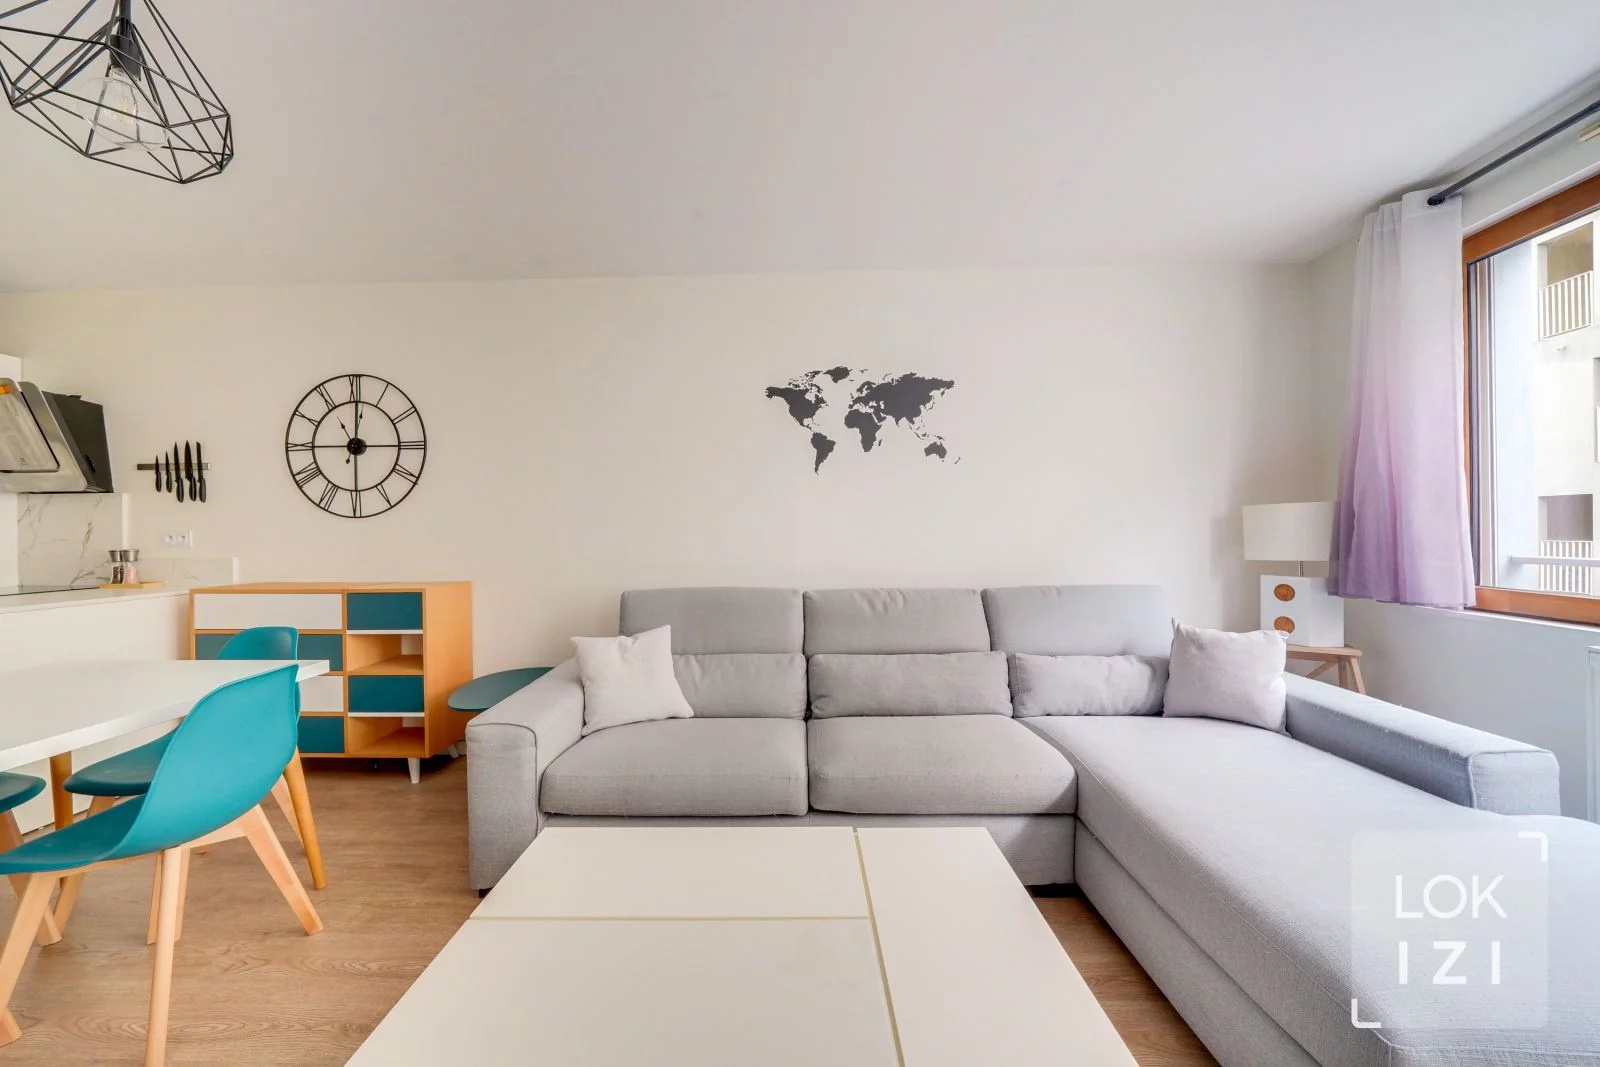 Location appartement meublé 3 pièces 64m² (Bordeaux - Chartrons)